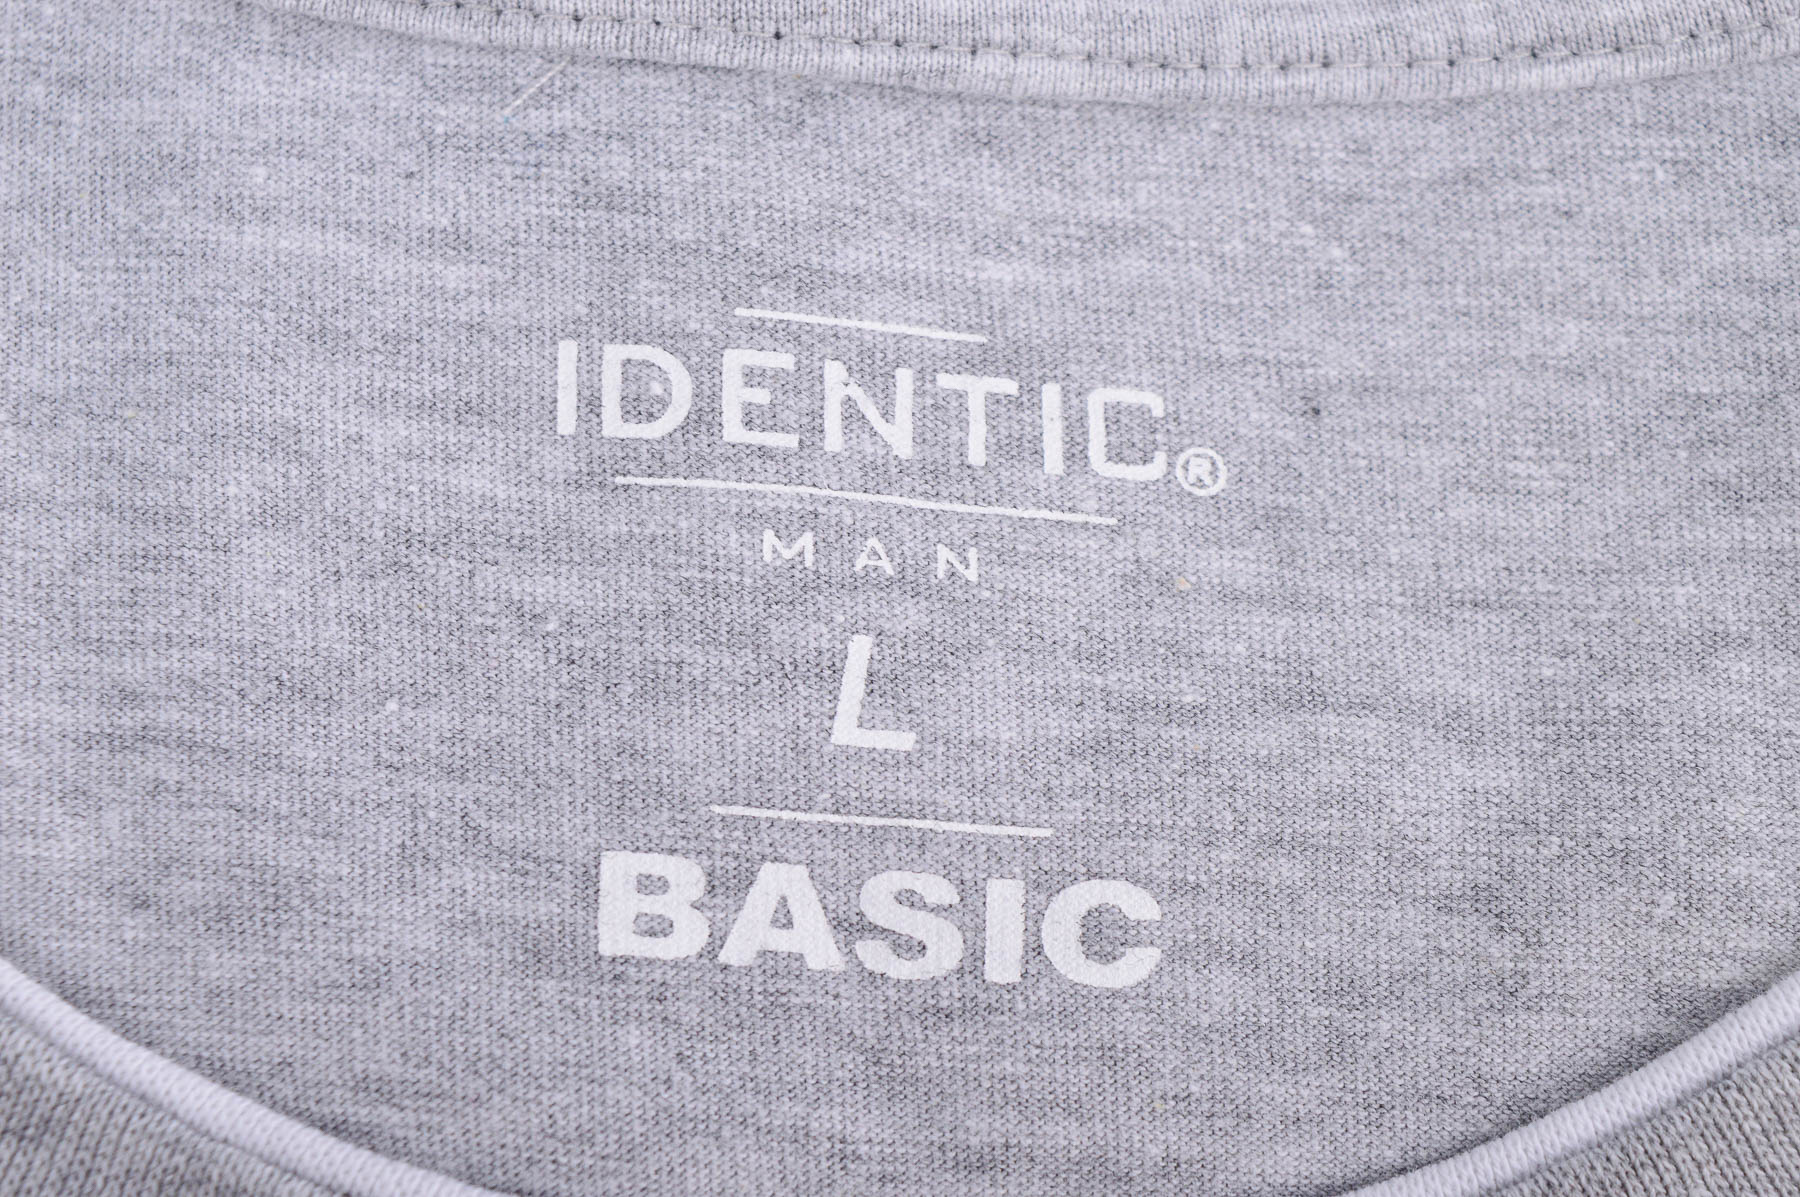 Men's blouse - Identic - 2